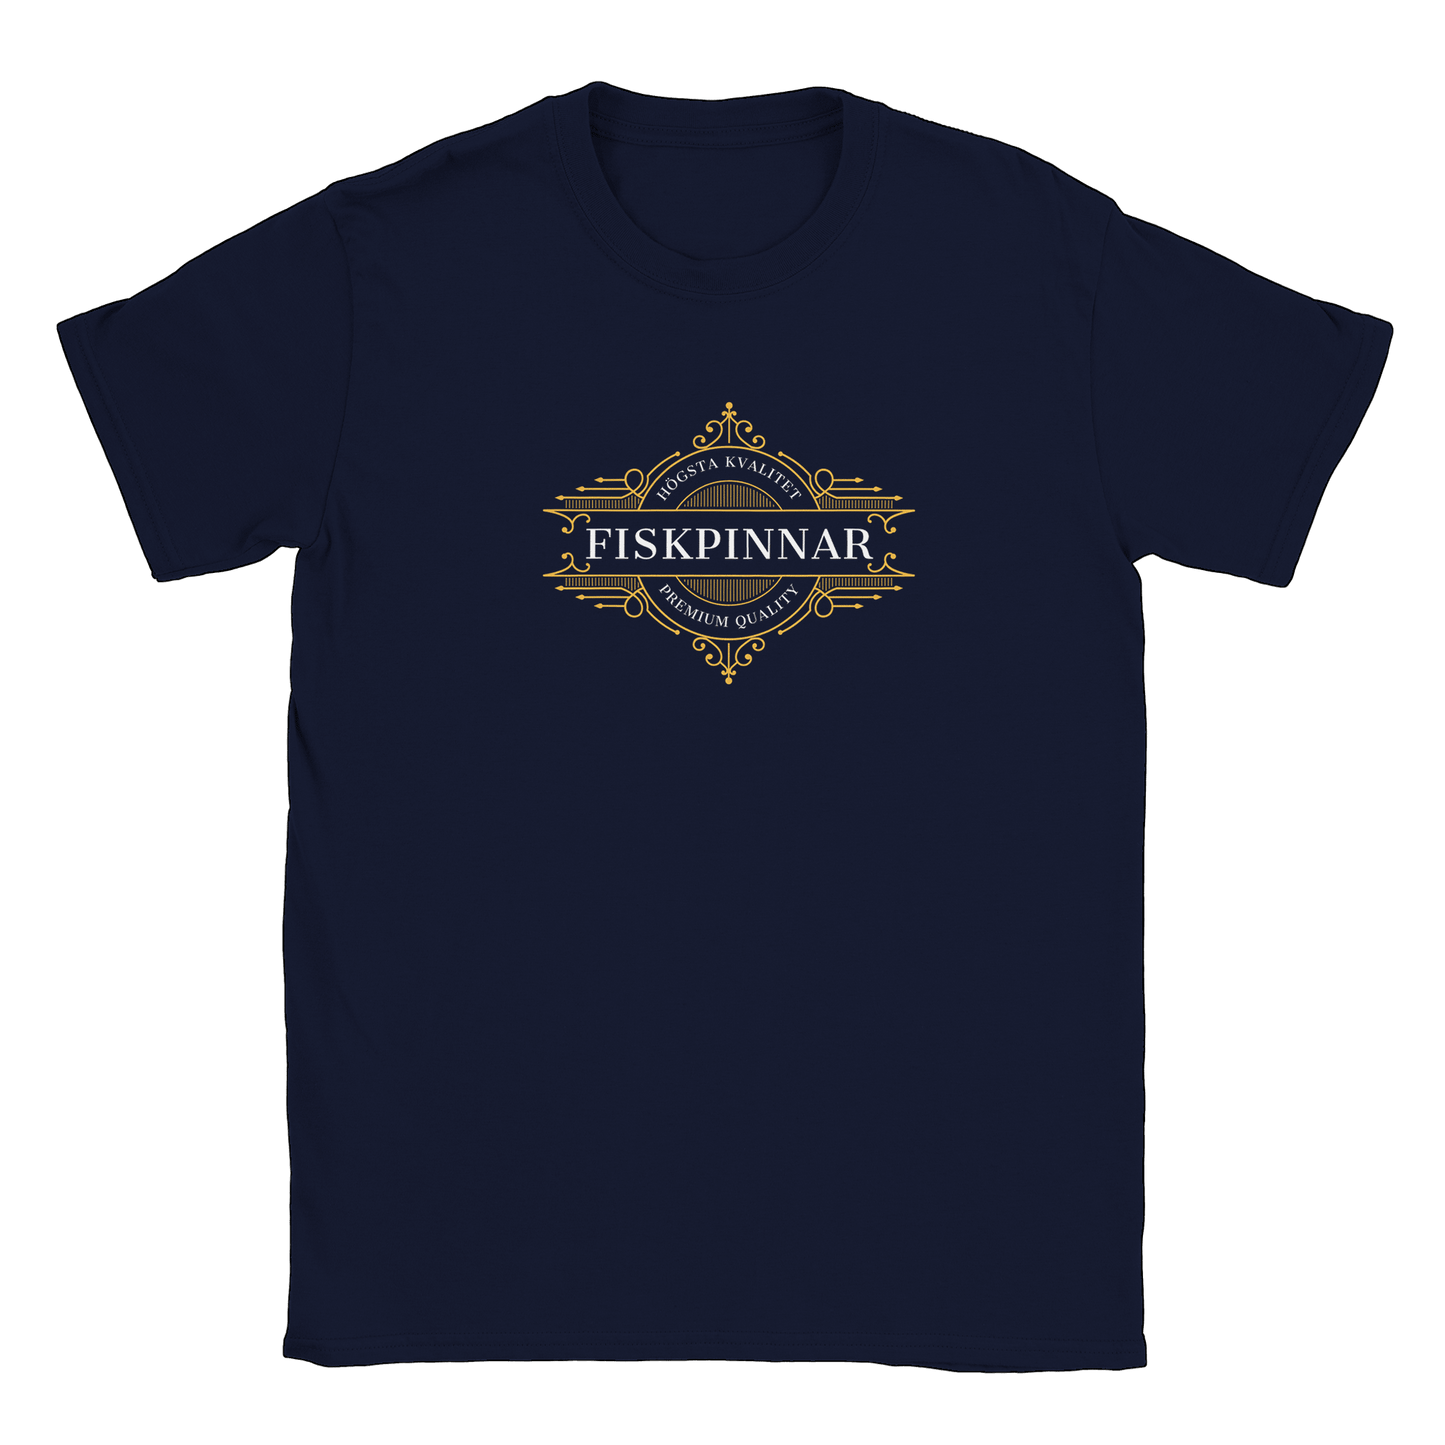 Fiskpinnar - T-shirt Navy